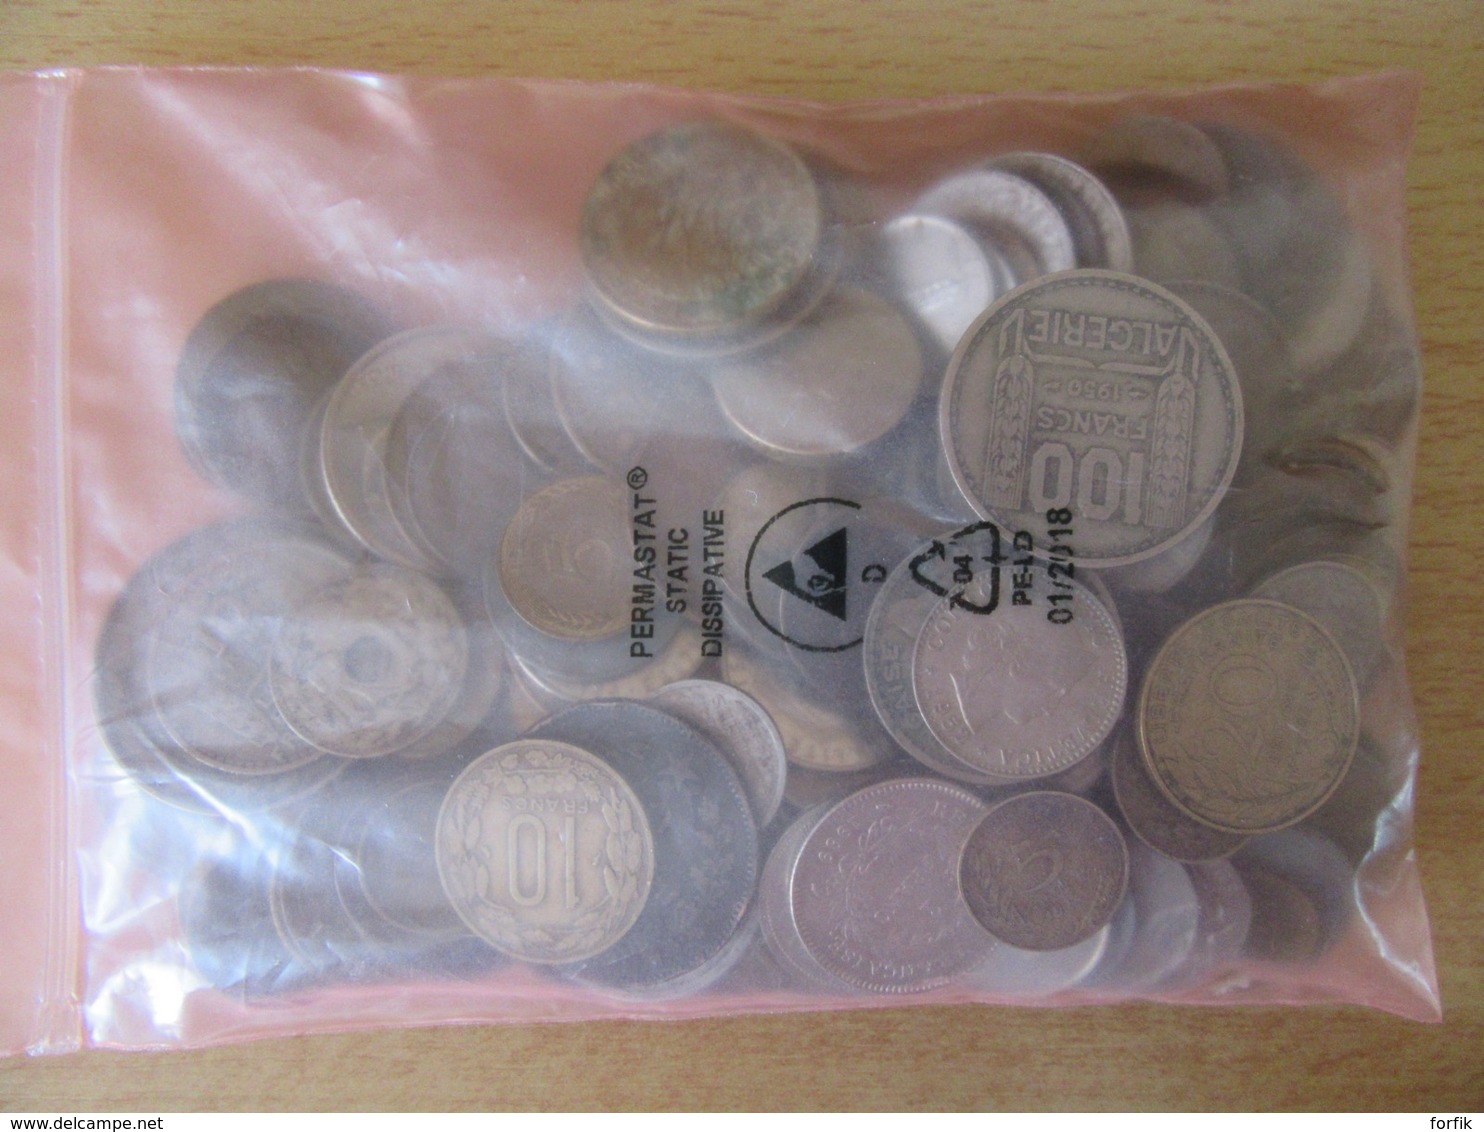 France / Etranger - Petit Vrac De 655 Grammes De Monnaies Modernes - Qqles Monnaies 19e Siècle - Lots & Kiloware - Coins